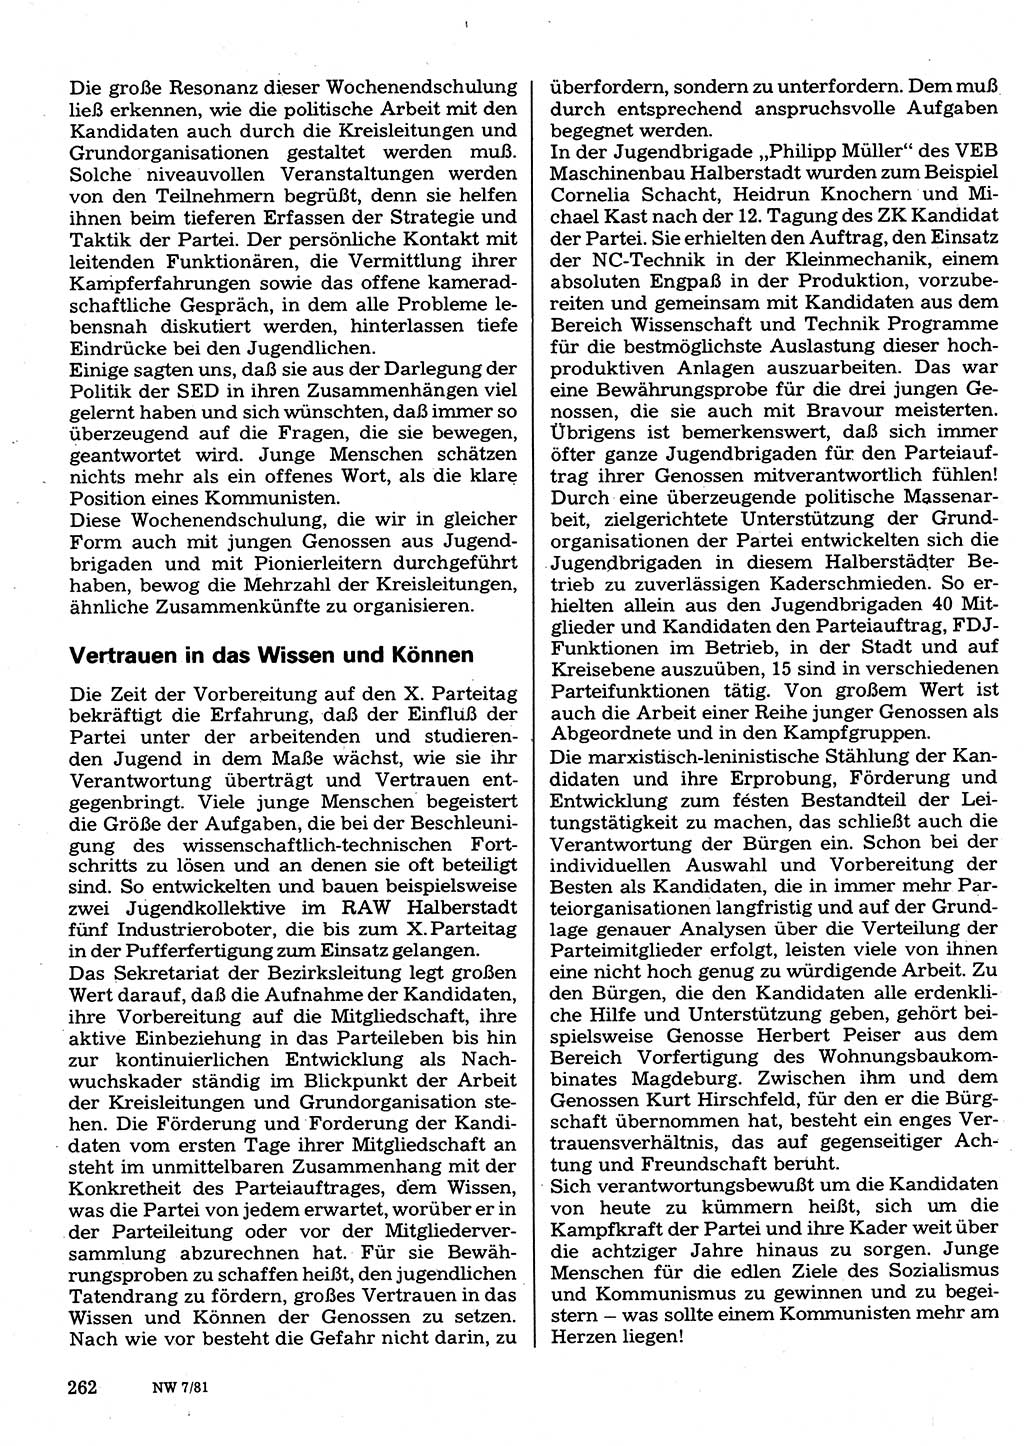 Neuer Weg (NW), Organ des Zentralkomitees (ZK) der SED (Sozialistische Einheitspartei Deutschlands) für Fragen des Parteilebens, 36. Jahrgang [Deutsche Demokratische Republik (DDR)] 1981, Seite 262 (NW ZK SED DDR 1981, S. 262)